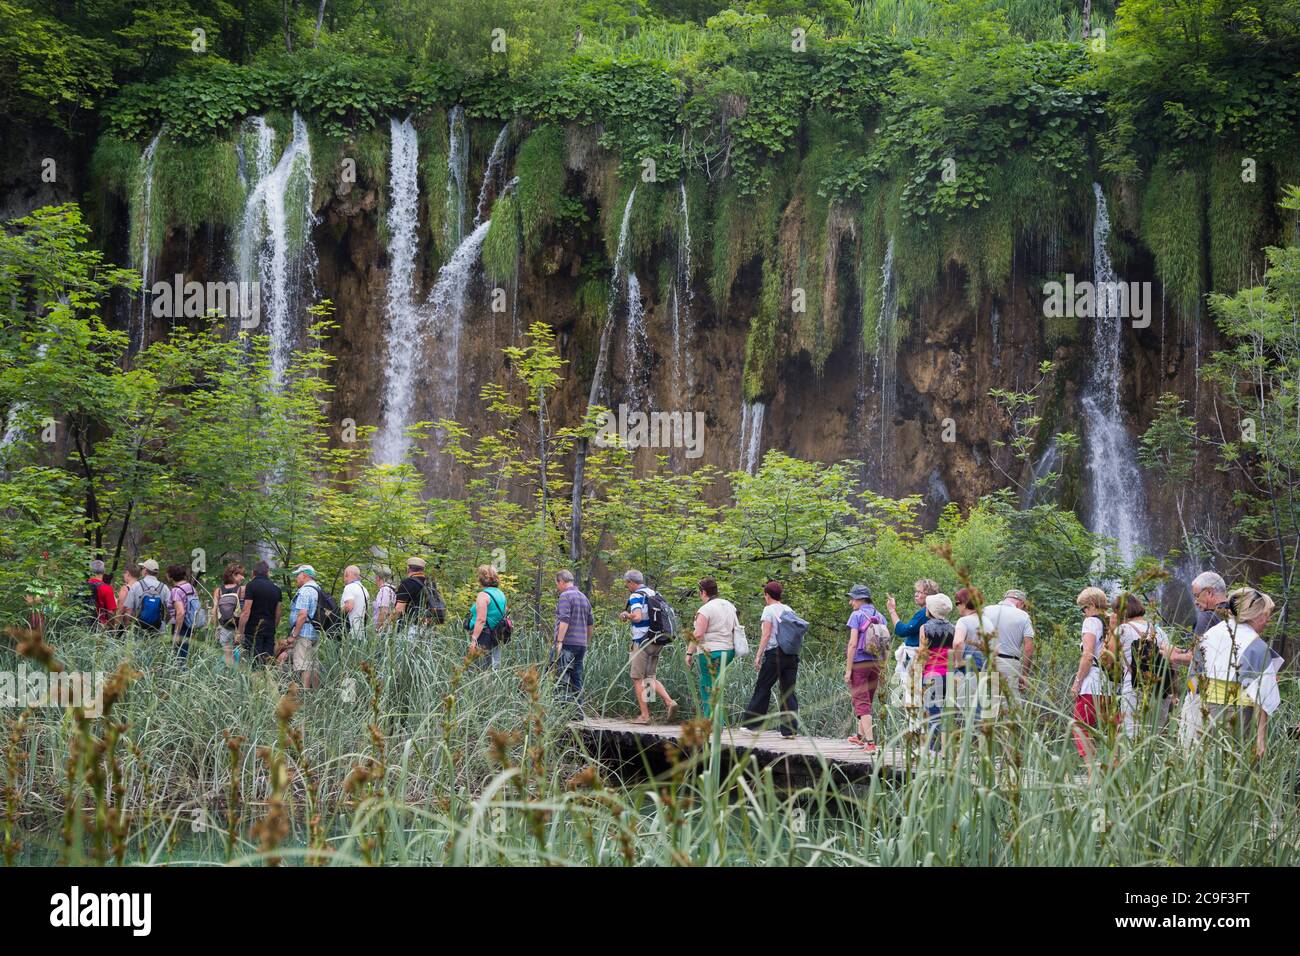 Nationalpark Plitvicer Seen, Lika-Senj County & Karlovac County, Kroatien. Besucher, die auf den hölzernen Gehwegen spazieren, die den Park durchqueren. Stockfoto